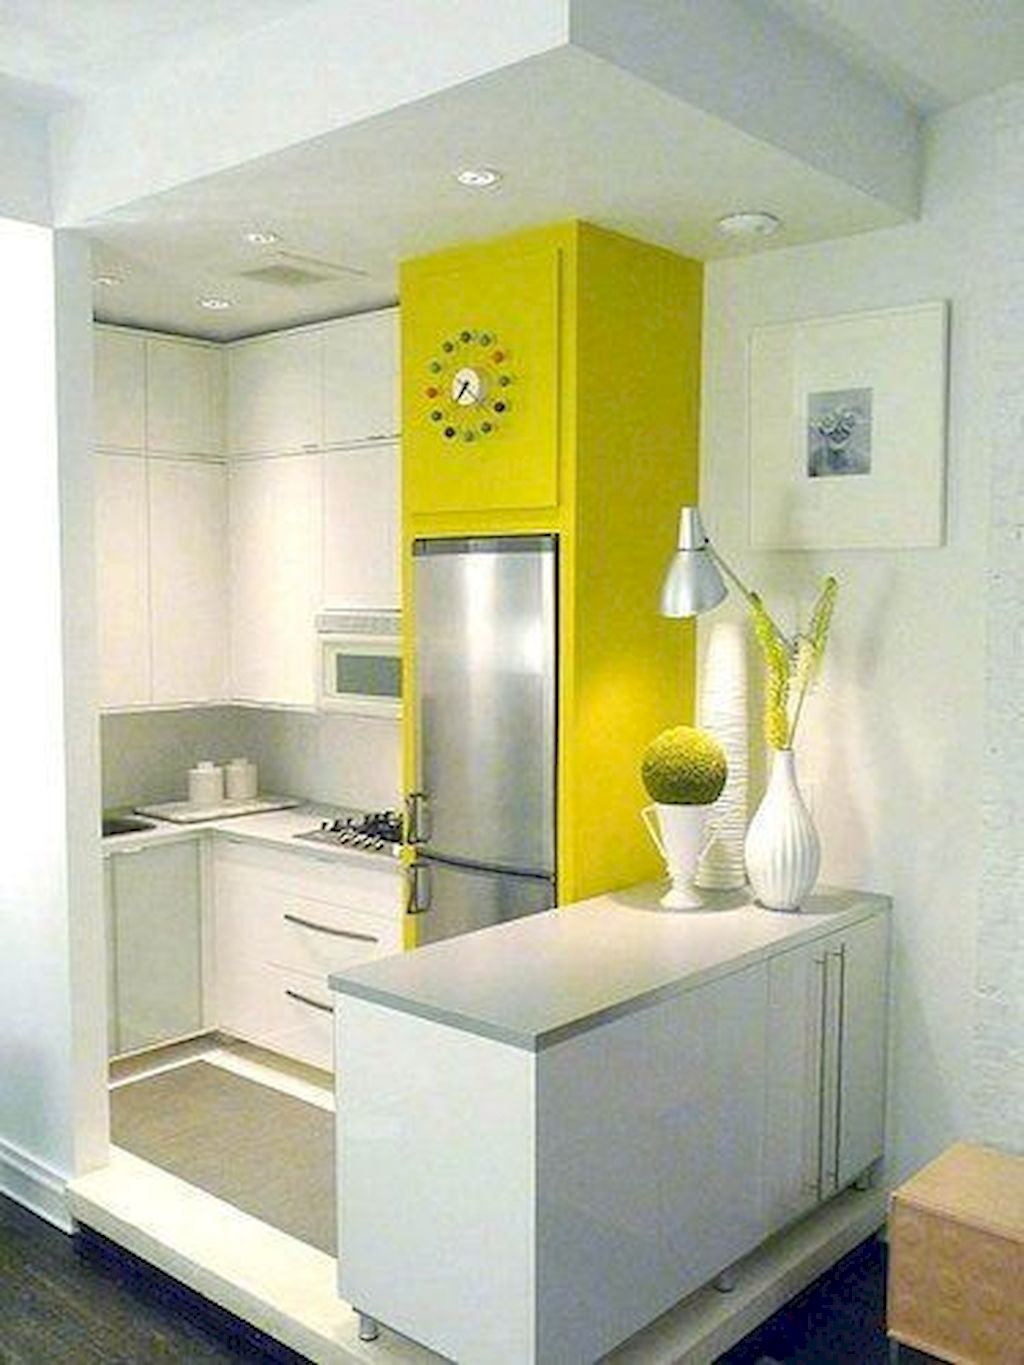 Маленькая белая кухня с ярким желтым пеналом для не встраиваемого холодильника